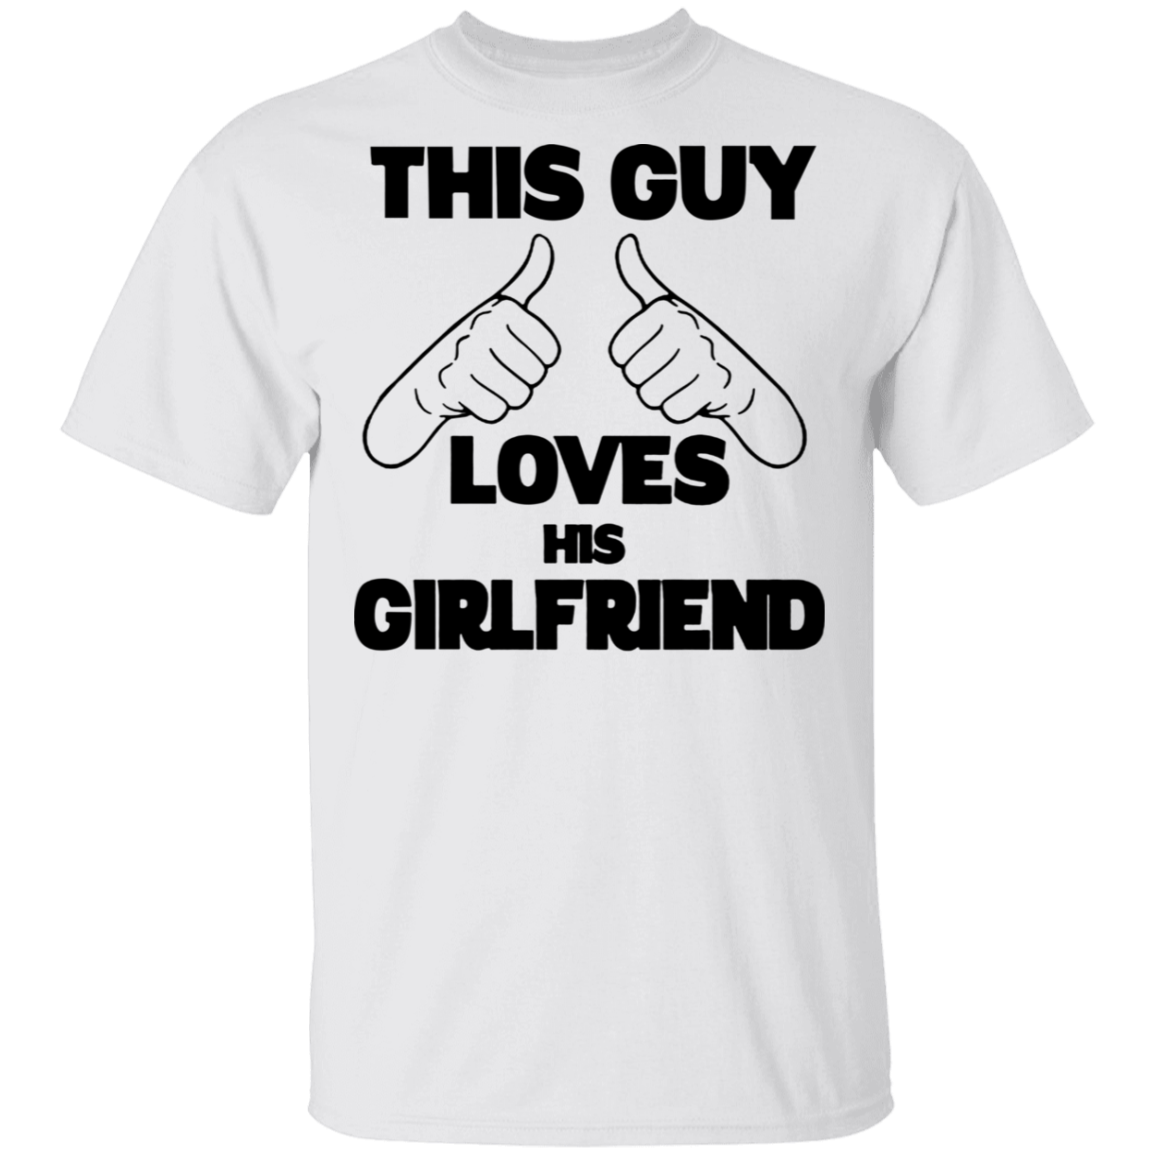 I Love My Girlfriend Shirt Funny This Guy Love His Girlfriend T Shirt For Men T Teenidi Store